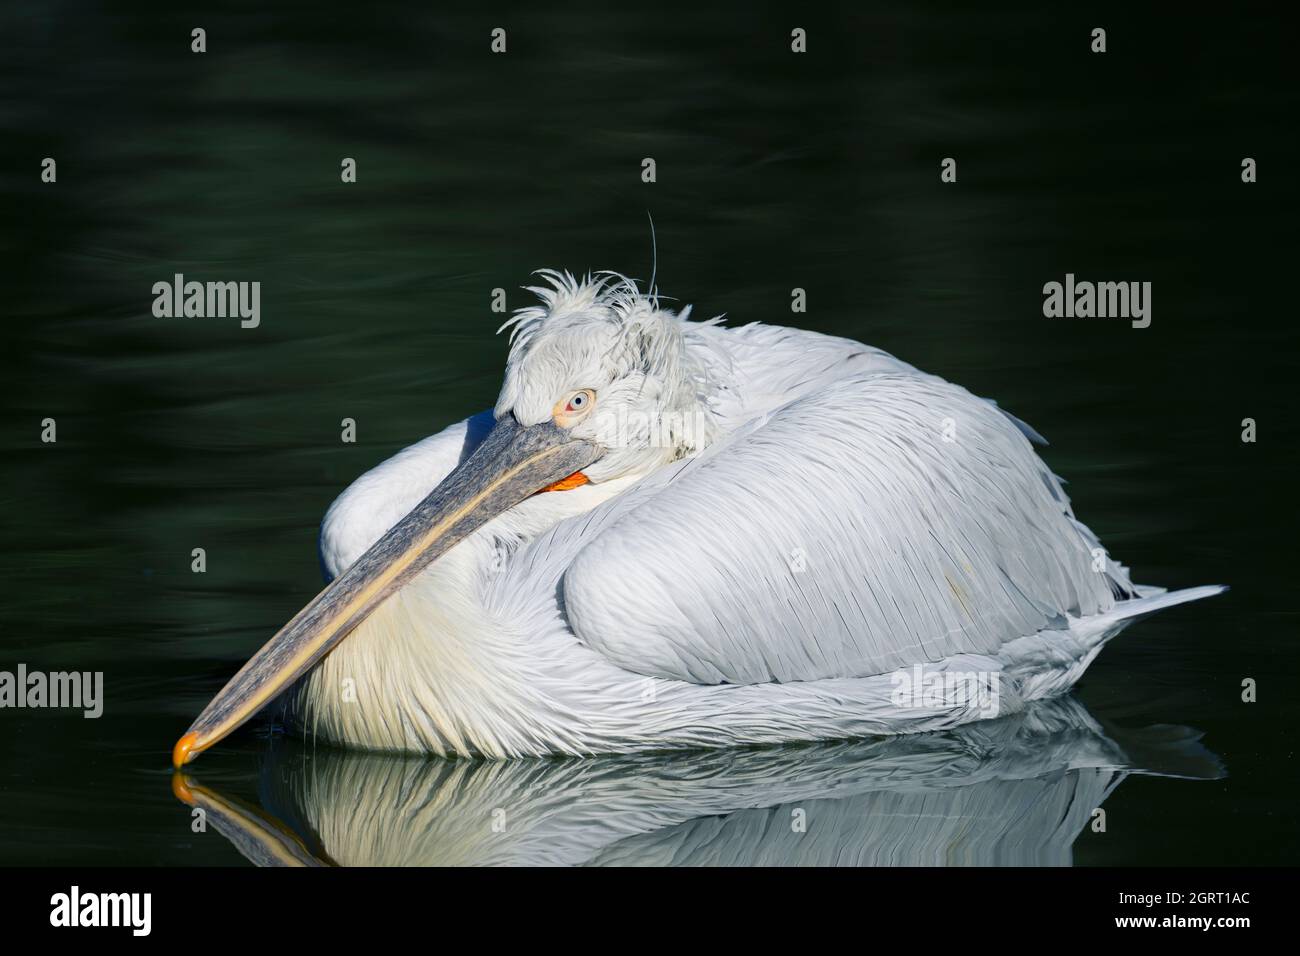 pelican at 'parc des oiseaux', Villars les Dombes, France Stock Photo